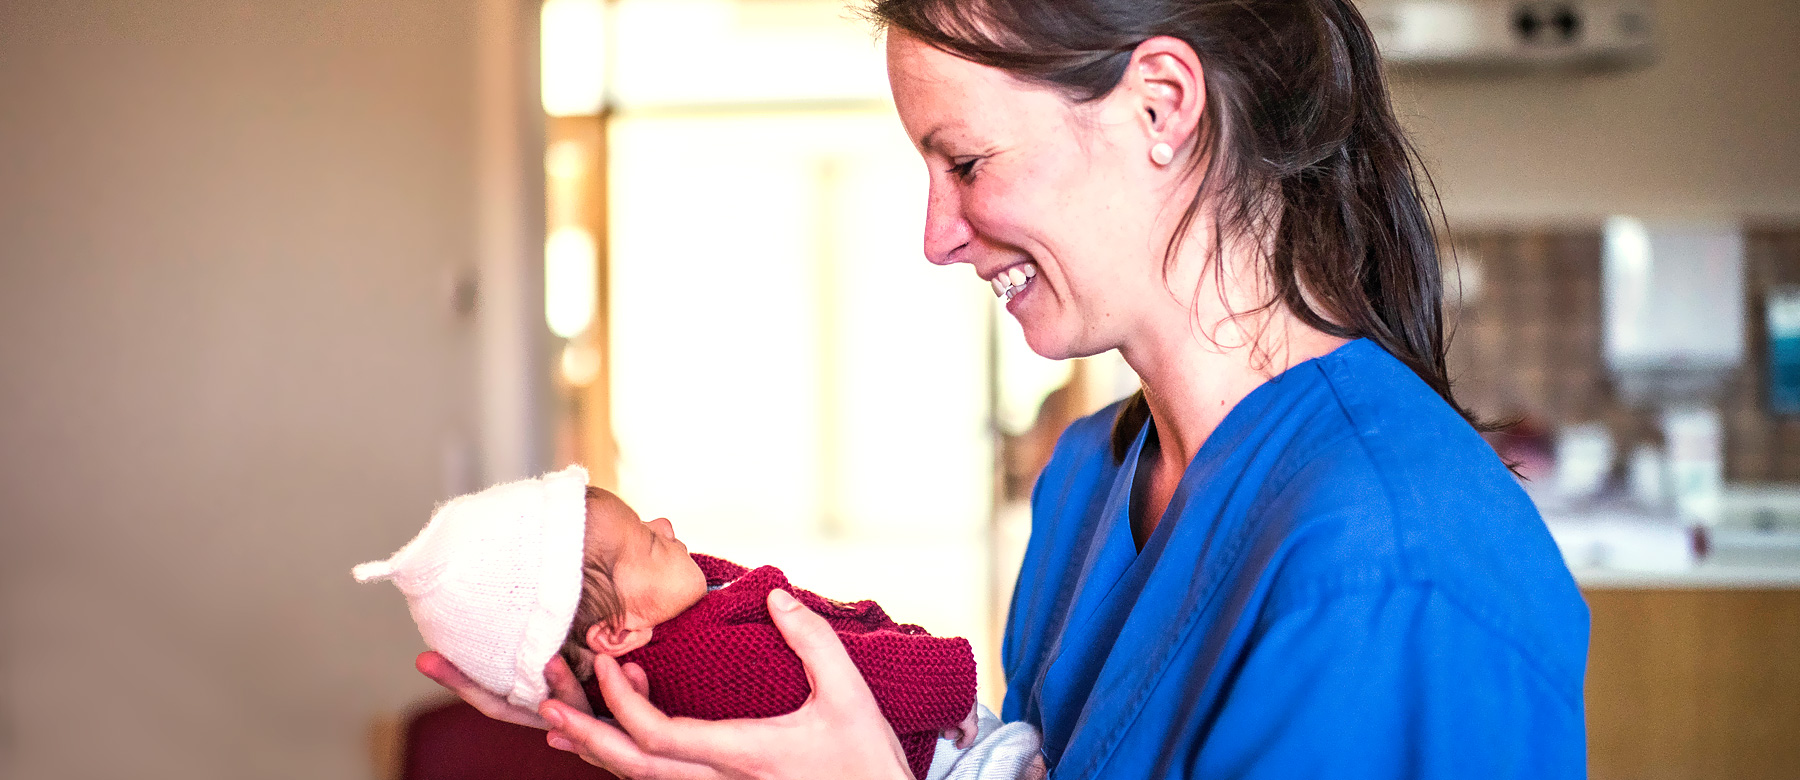 Kinderkrankenpflegerin hält ein frühgeborenes Baby in den Händen und lächelt.